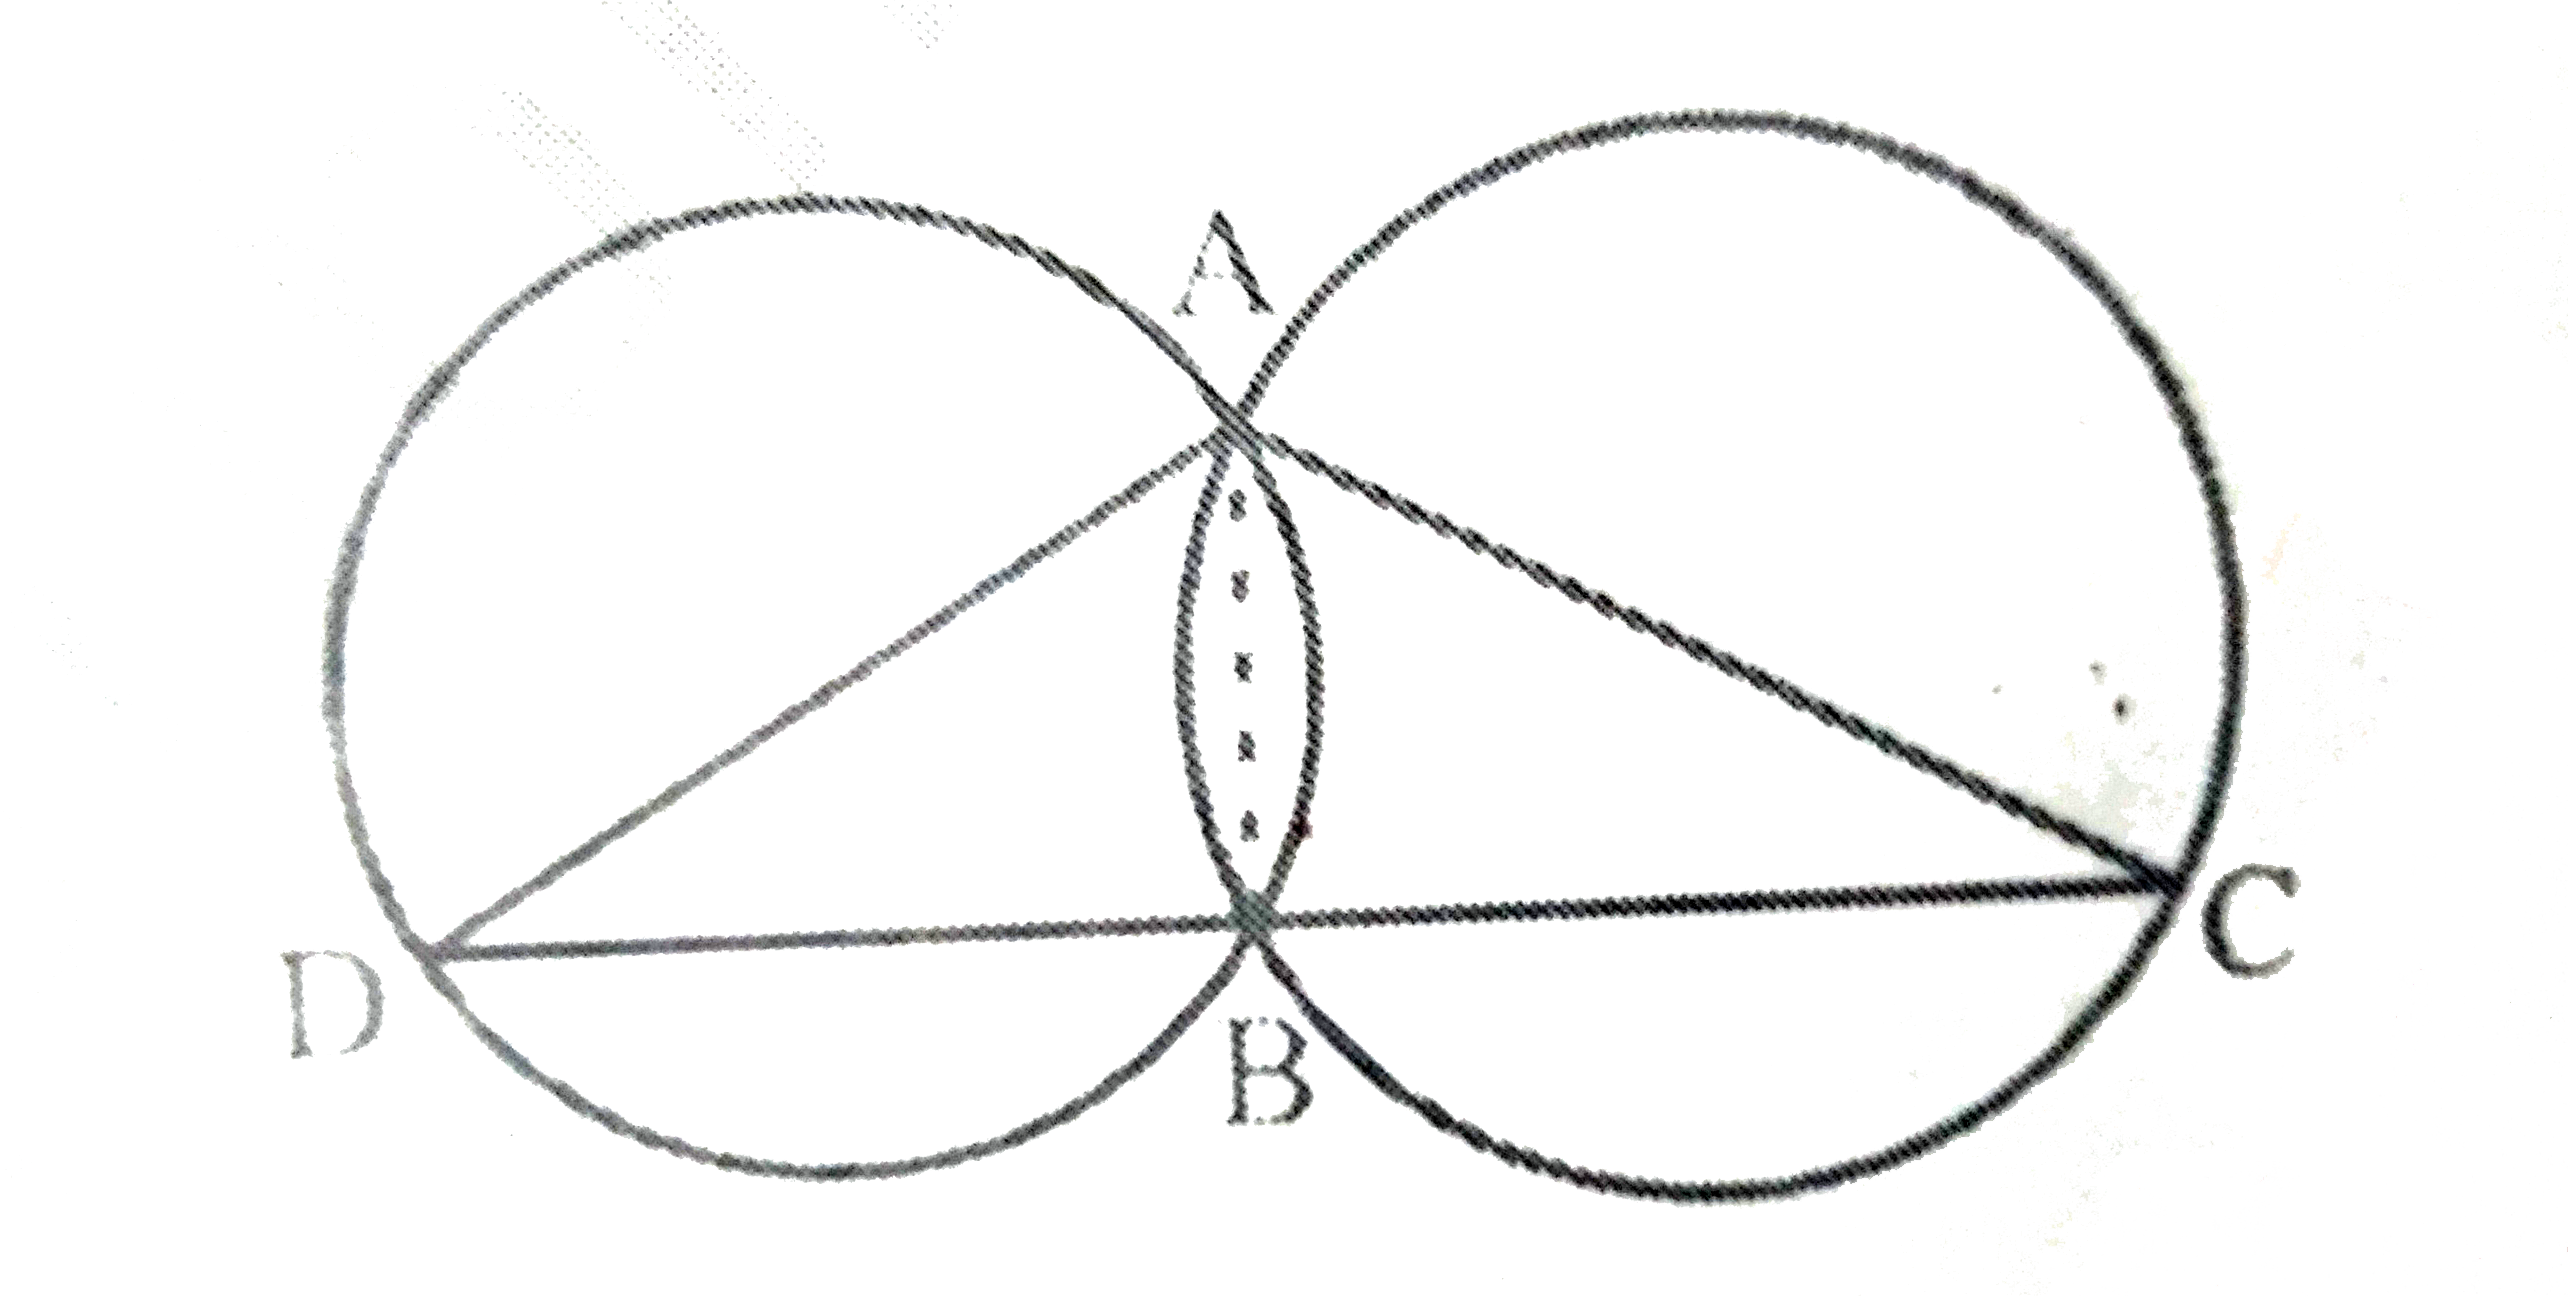 दो वृत्त दो बिंदुओं A और B पर प्रतिच्छेद करते है । AD और AC  दोनों वृत्तों के व्यास है । सिद्ध कीजिए कि B रेखाखंड DC पर स्थित है ।